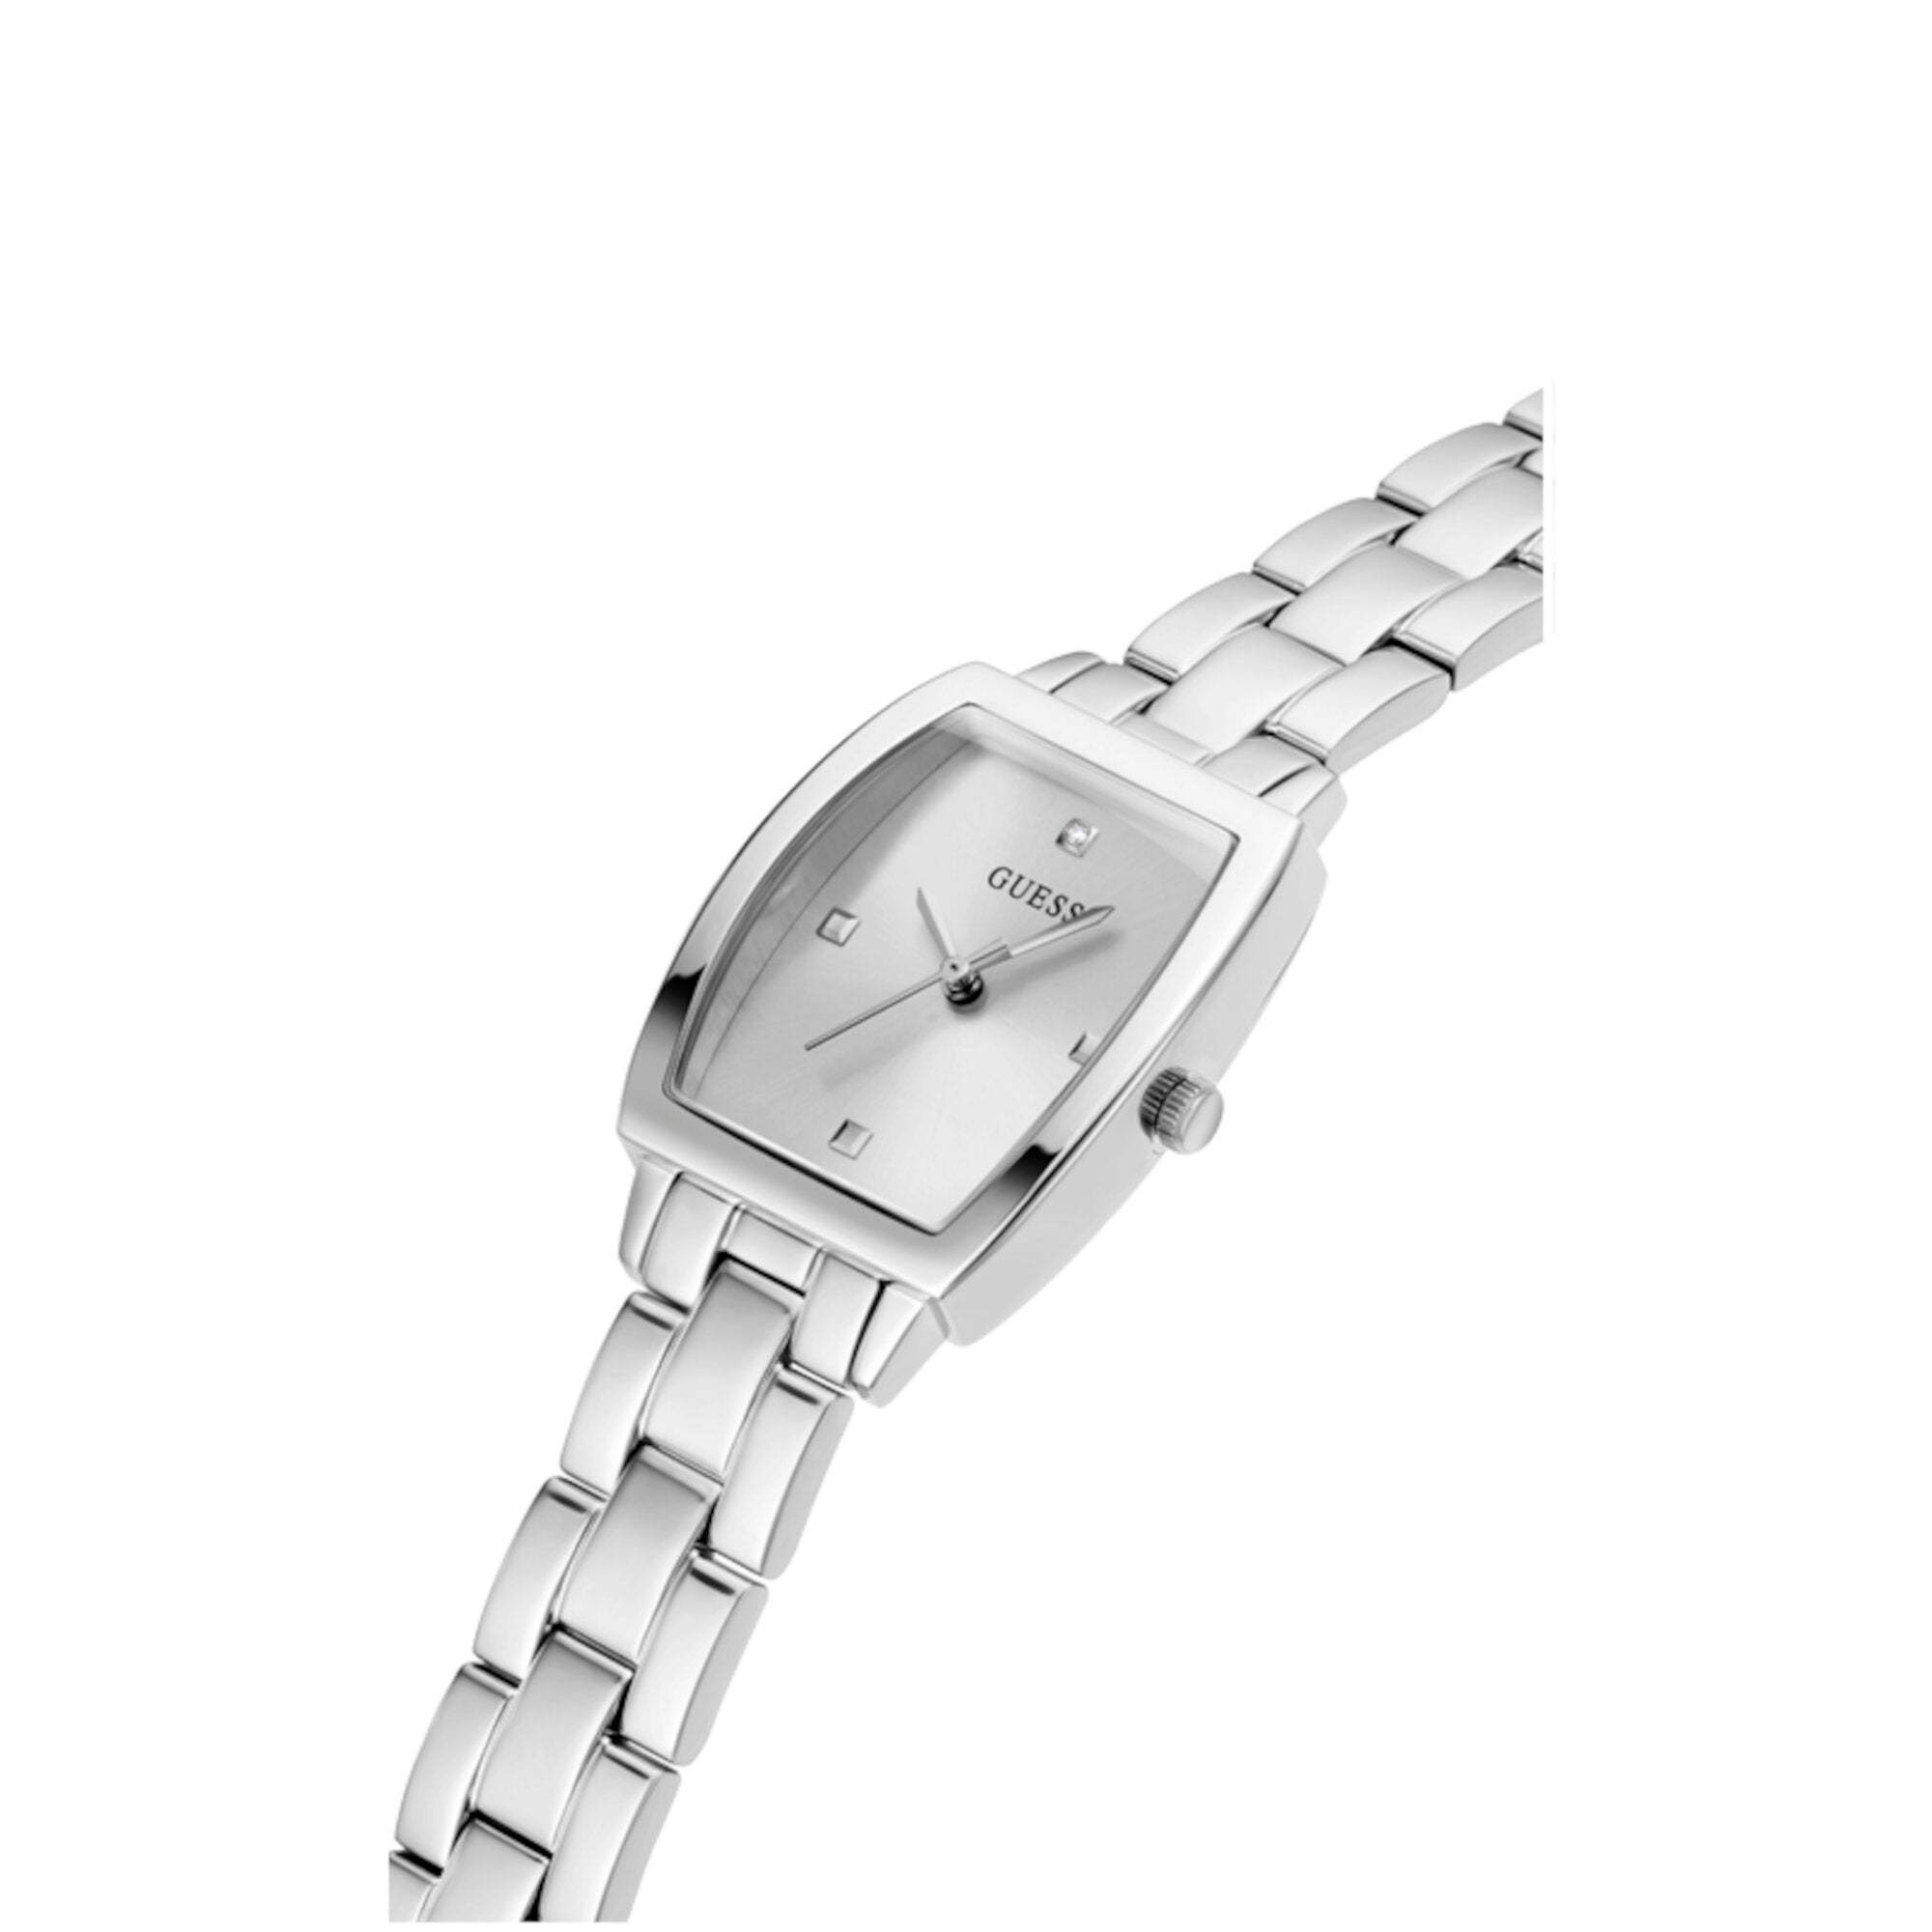 Reloj Guess de mujer Brilliant color plata